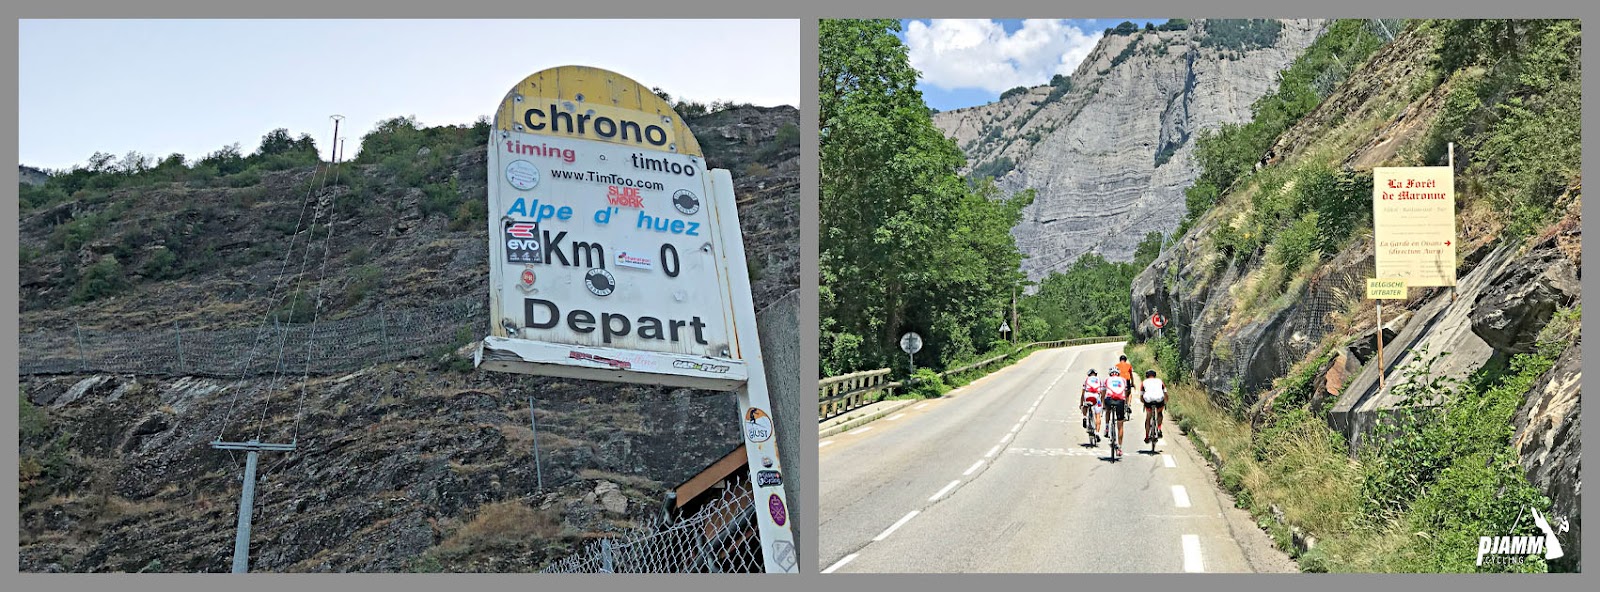 PJAMM Cyclists ride on roadway on Alpe d'Huez climb; KM marker at climb's start